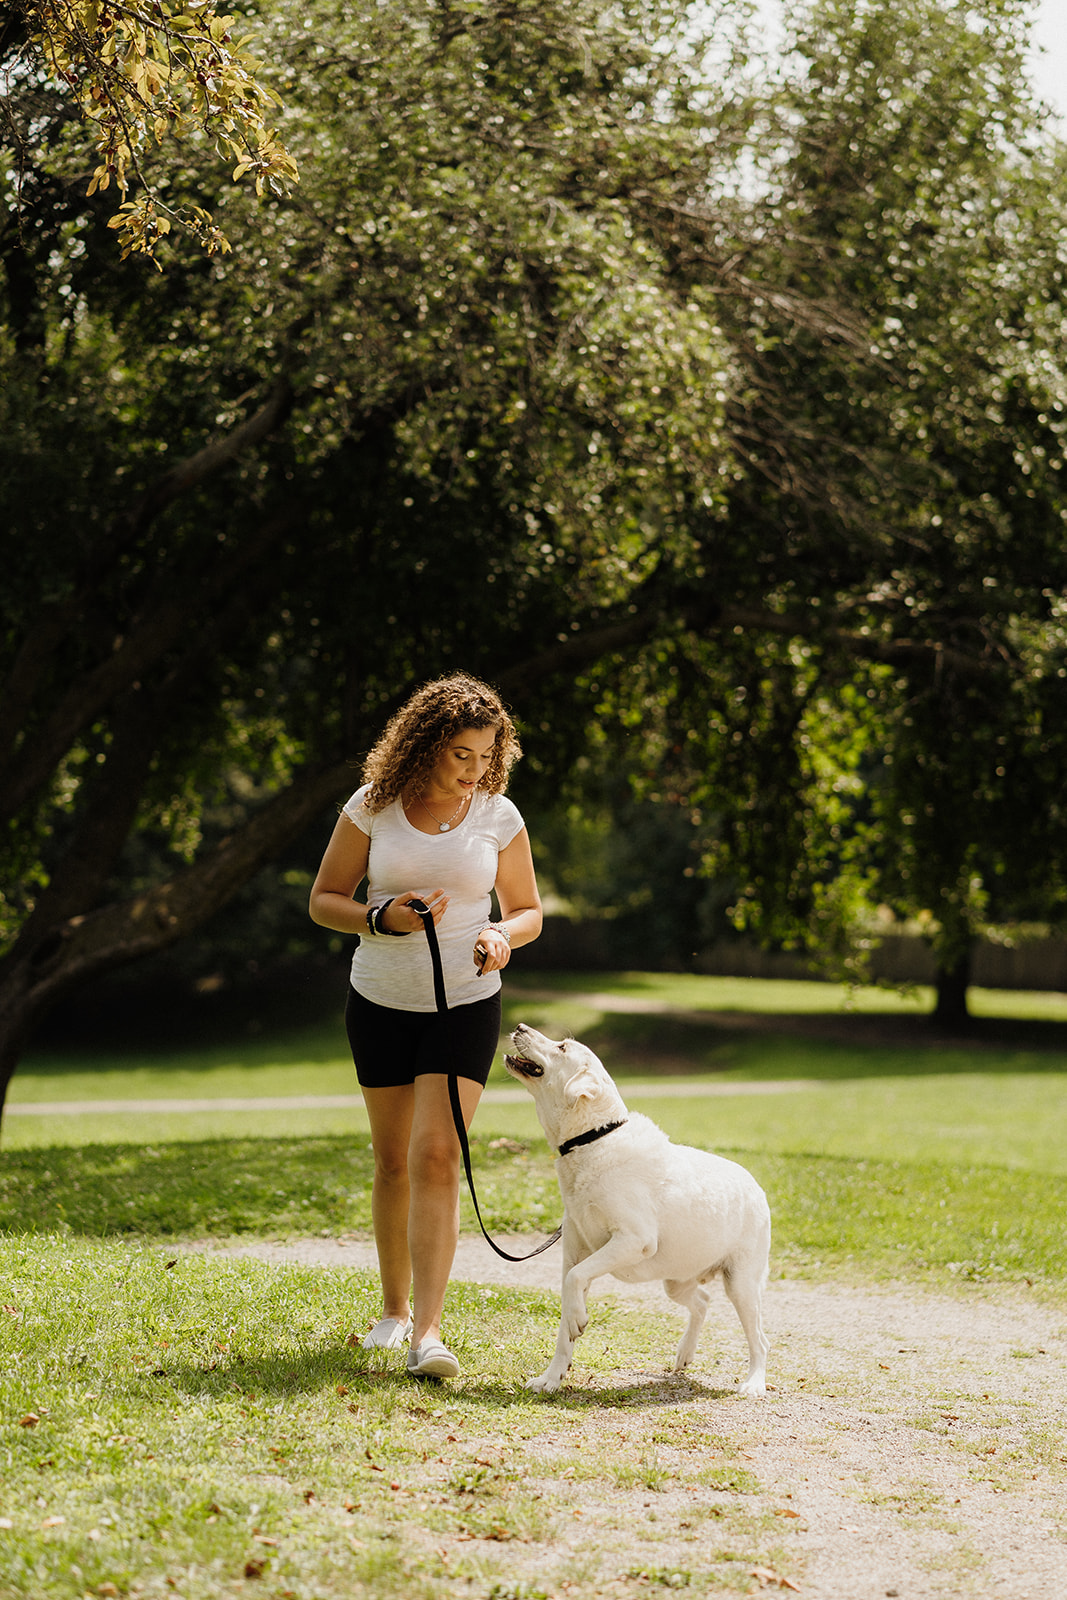 A lady walking a dog on a leash.